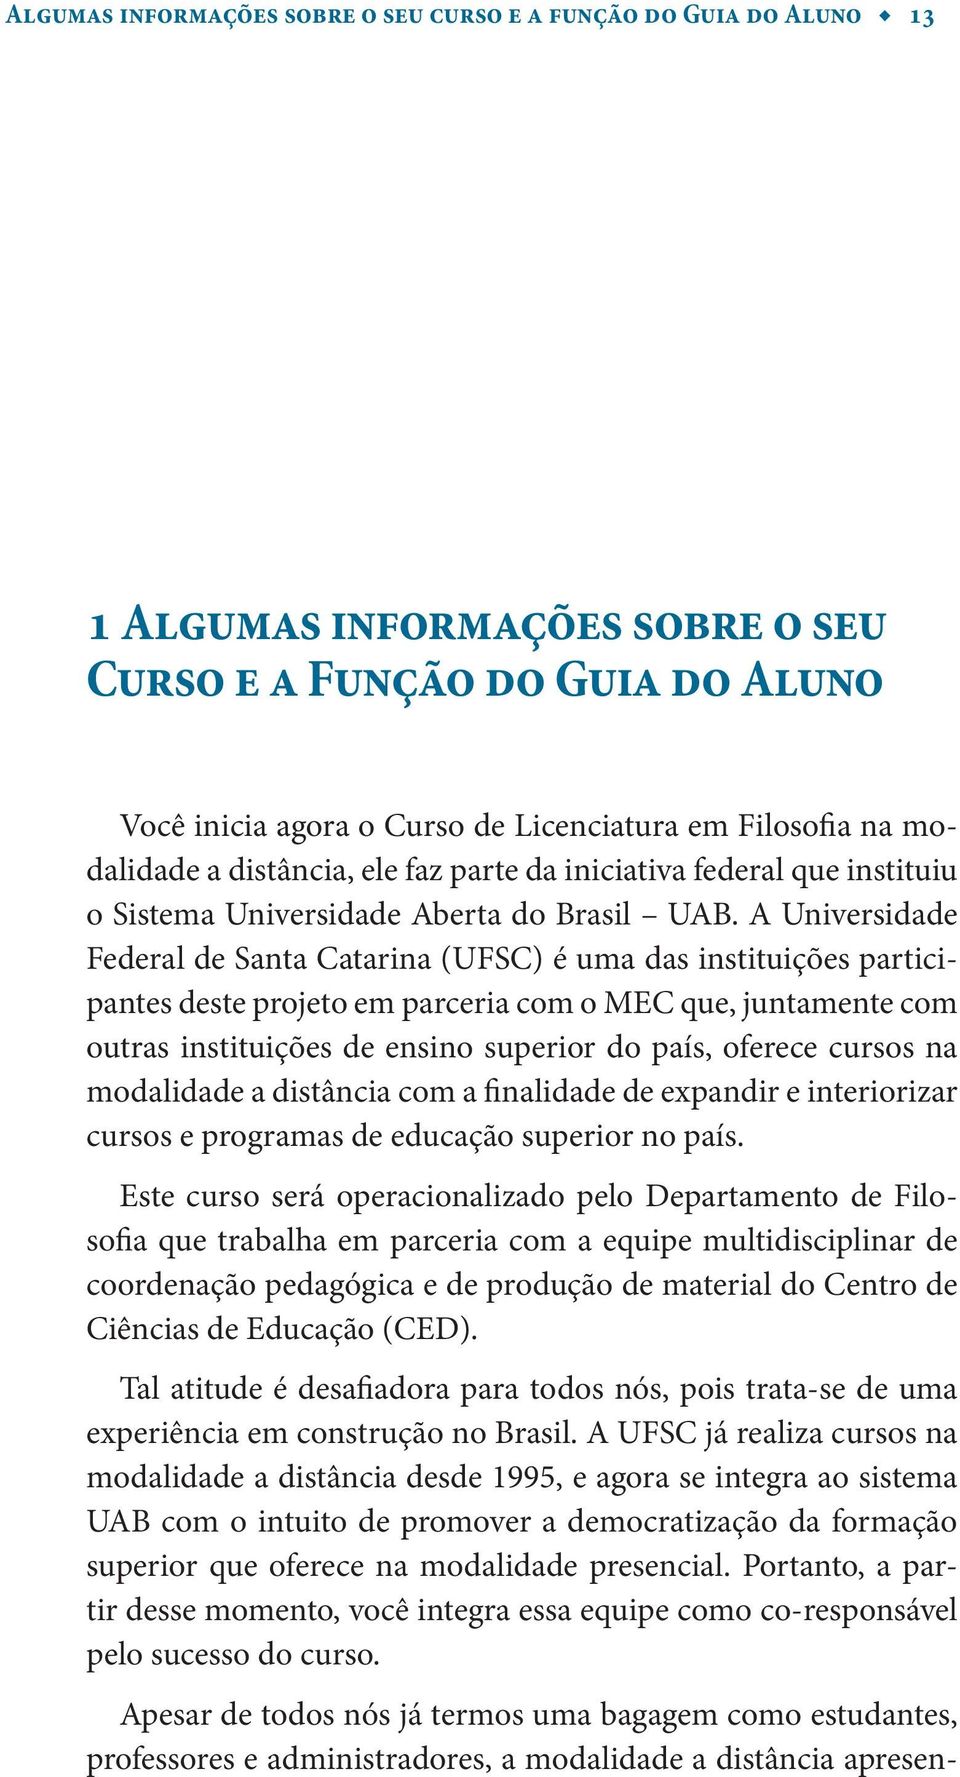 A Universidade Federal de Santa Catarina (UFSC) é uma das instituições participantes deste projeto em parceria com o MEC que, juntamente com outras instituições de ensino superior do país, oferece